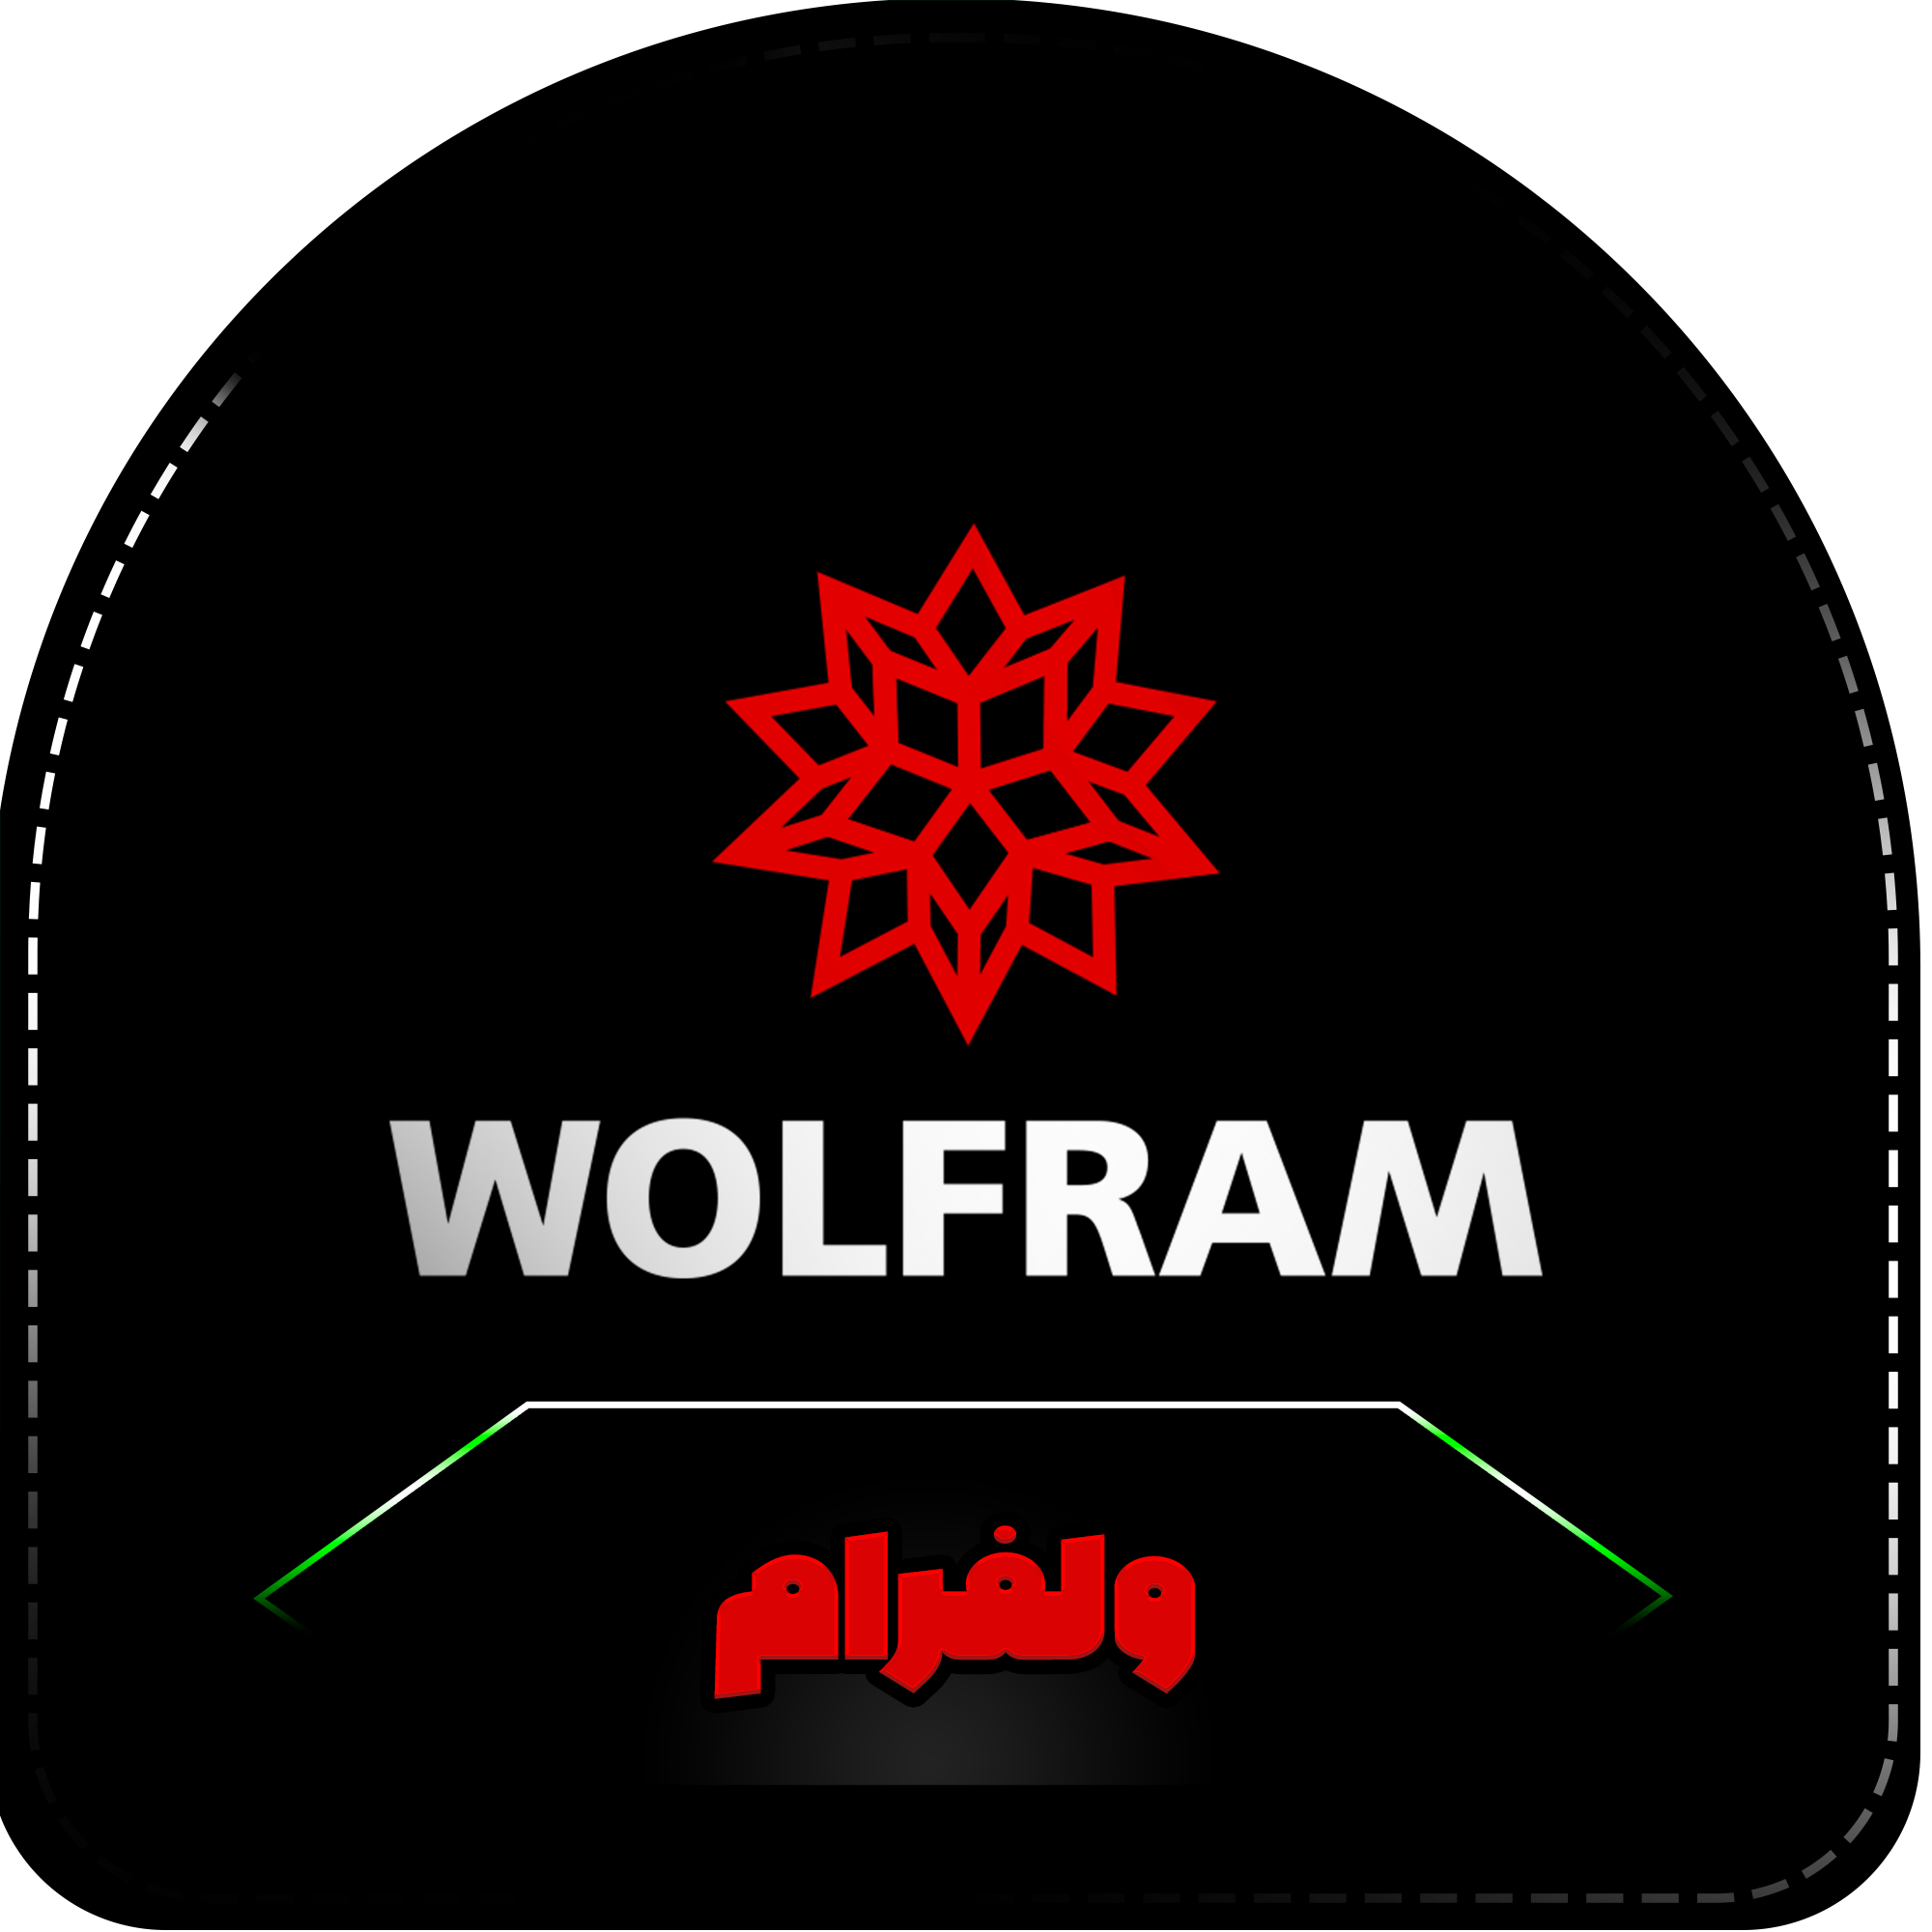 خرید اکانت wolfram (ولفرام) روی ایمیل شما ارزان